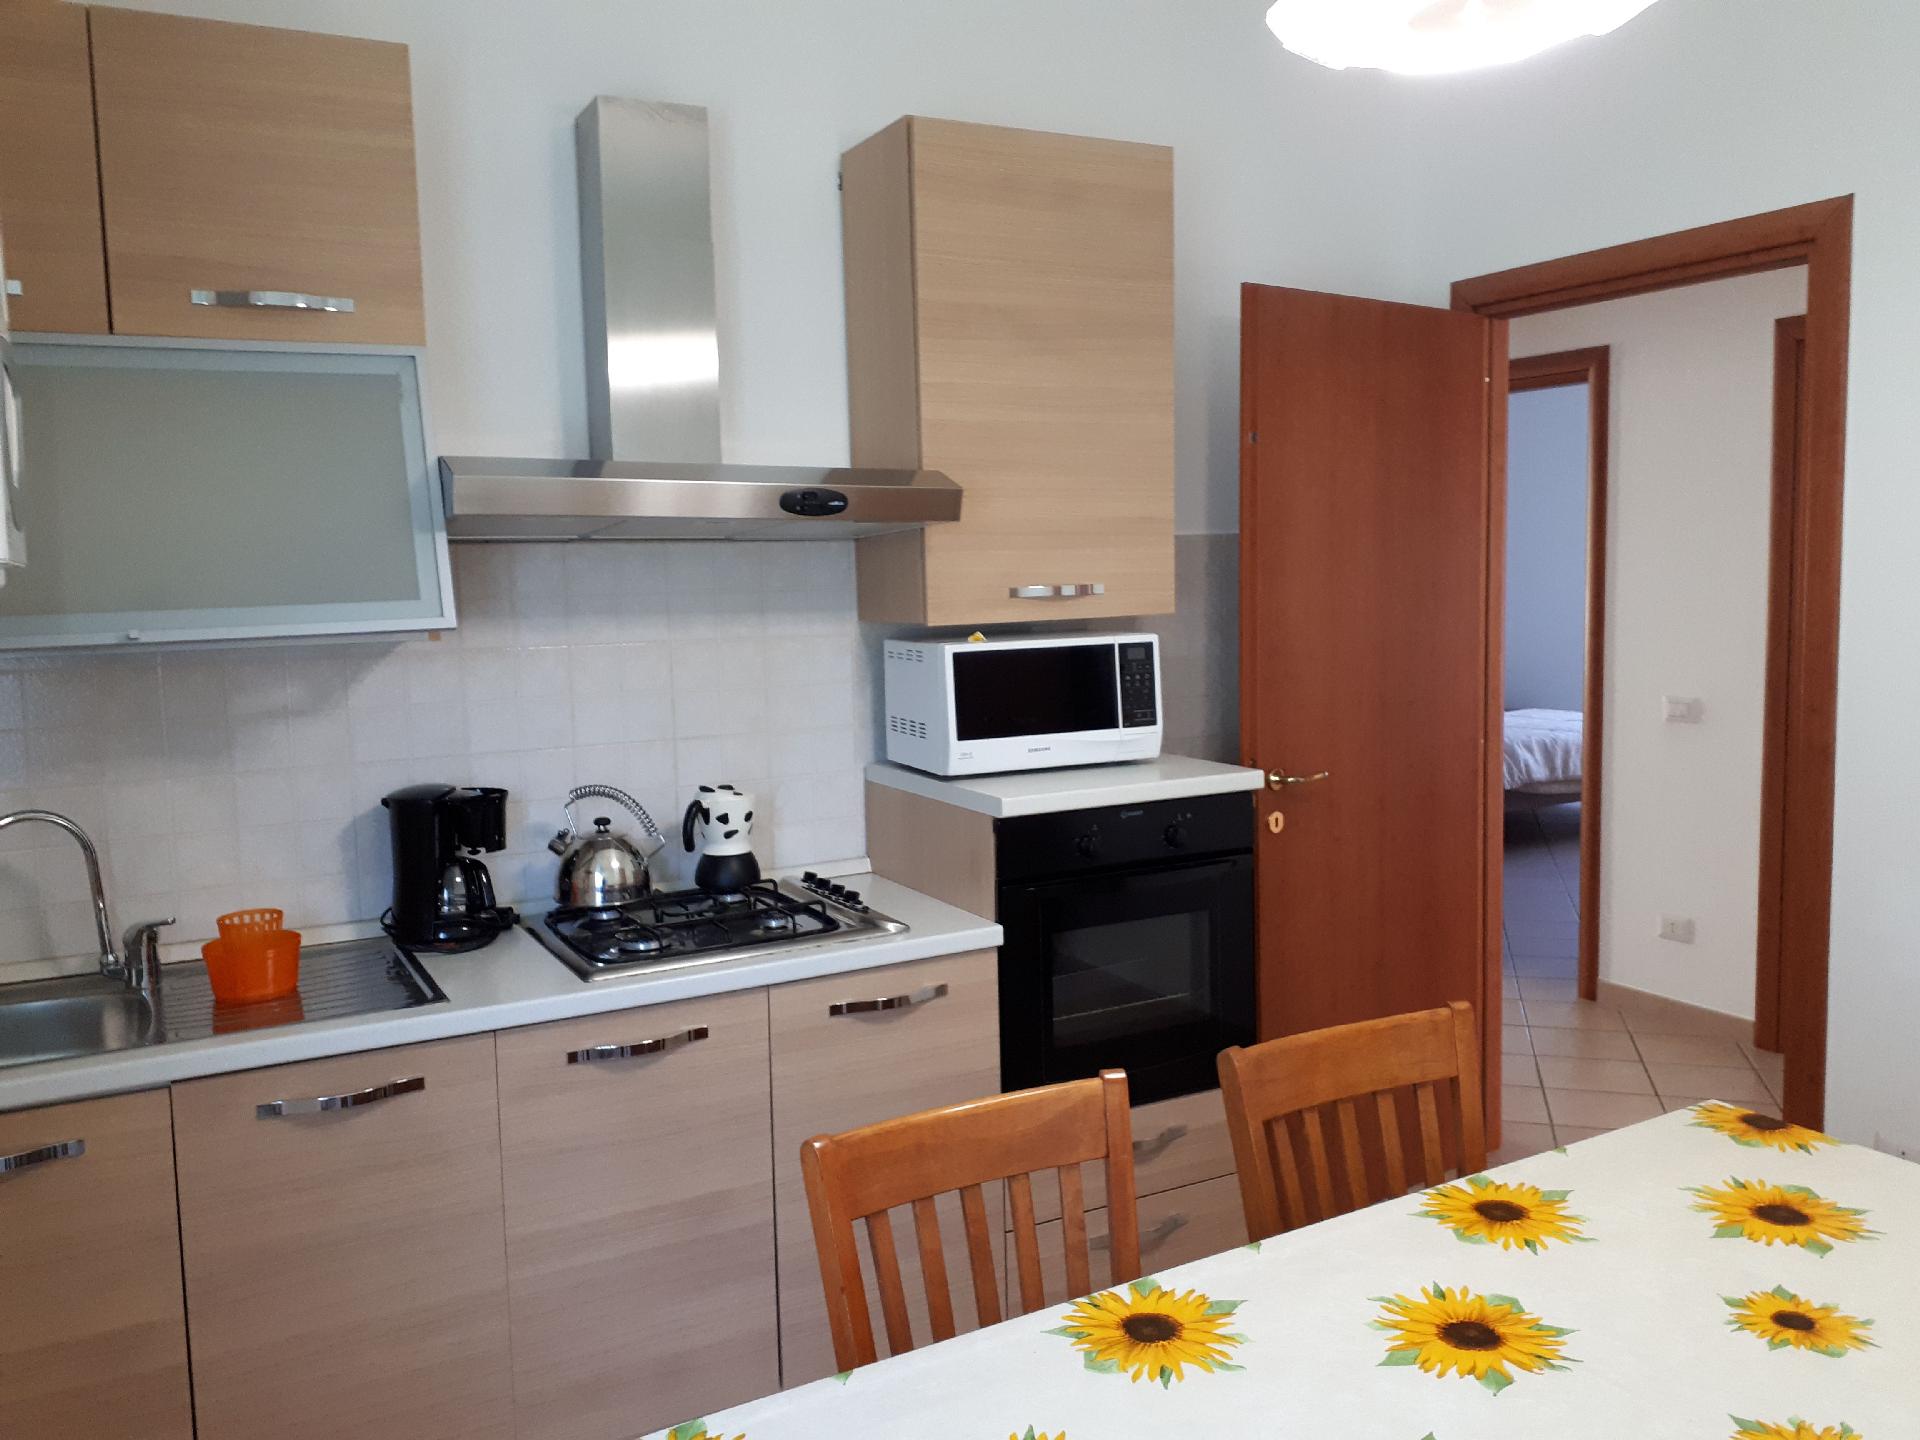 Ferienwohnung für 6 Personen ca. 90 m² i Ferienwohnung  Ligurien